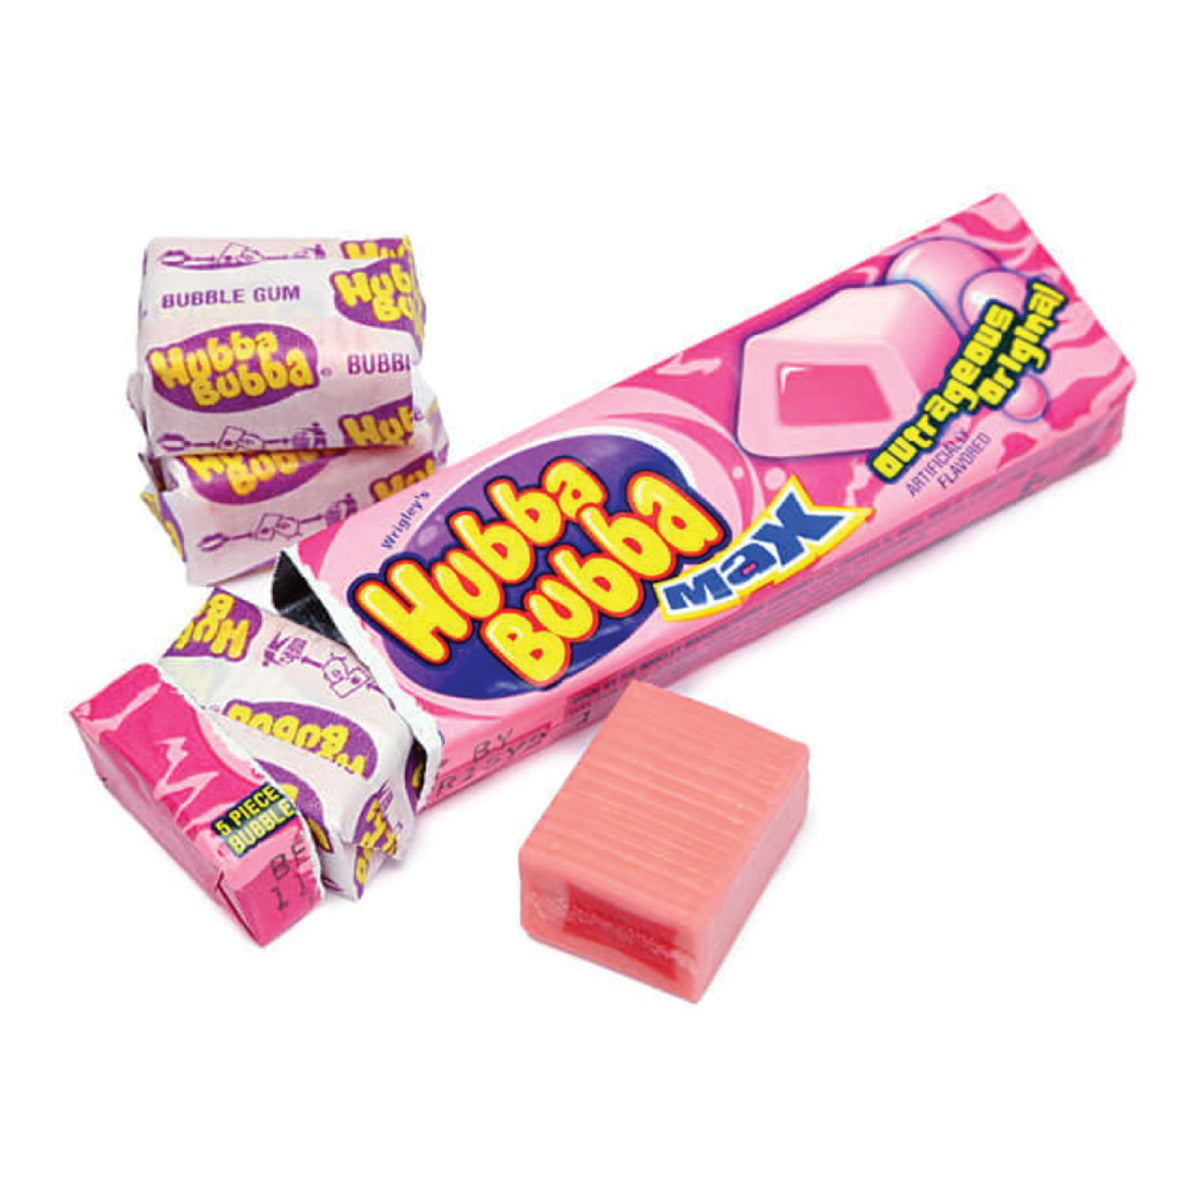 Hubba Bubba Wrigley’s Tutti Frutti - Gomma da Masticare gusto Tutti Frutti (5pz - 35g) candy online